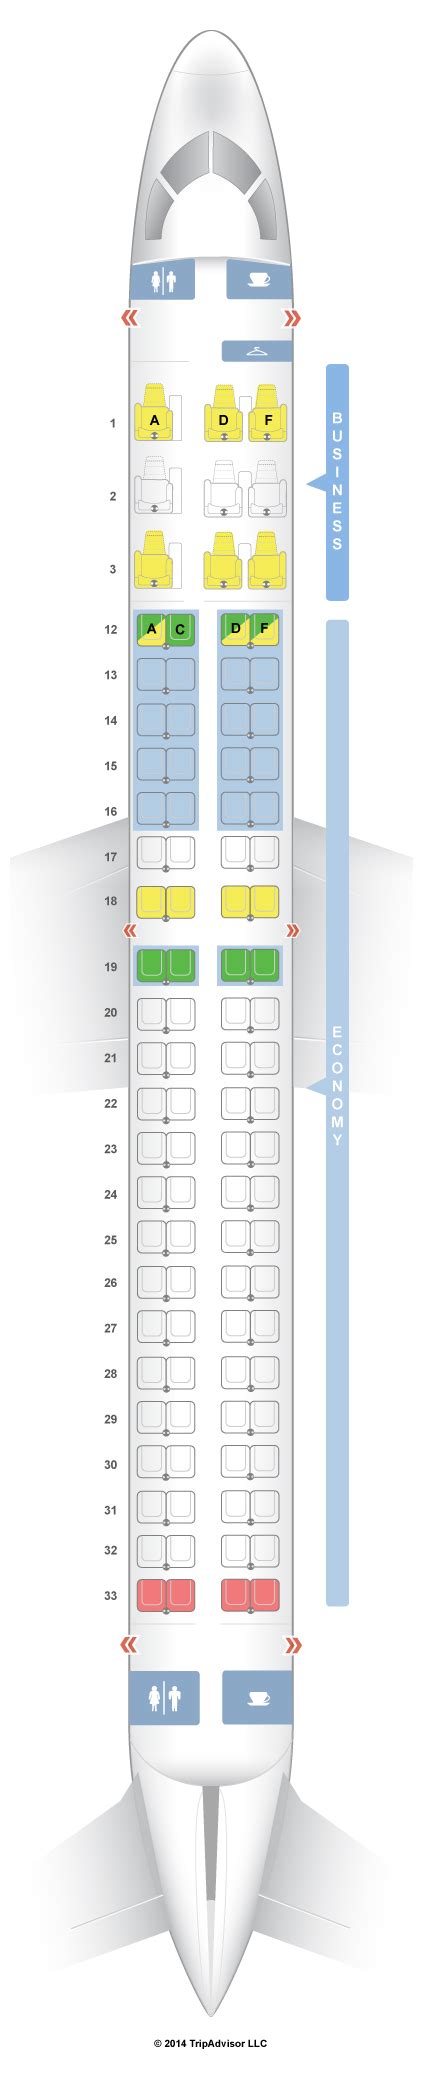 Seatguru Seat Map Air Canada Embraer E